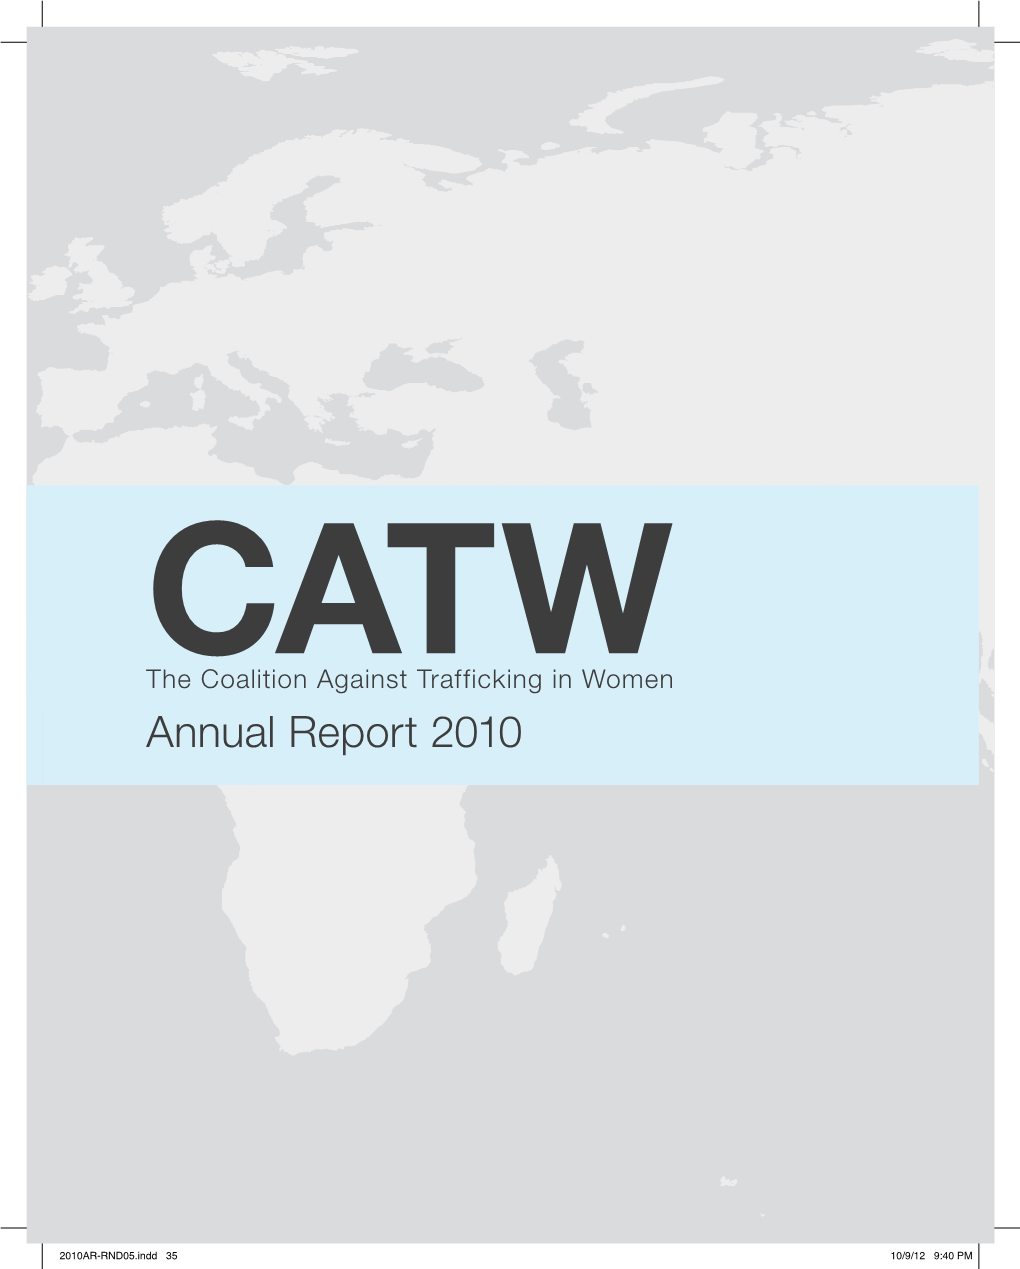 CATW 2010 Annual Report